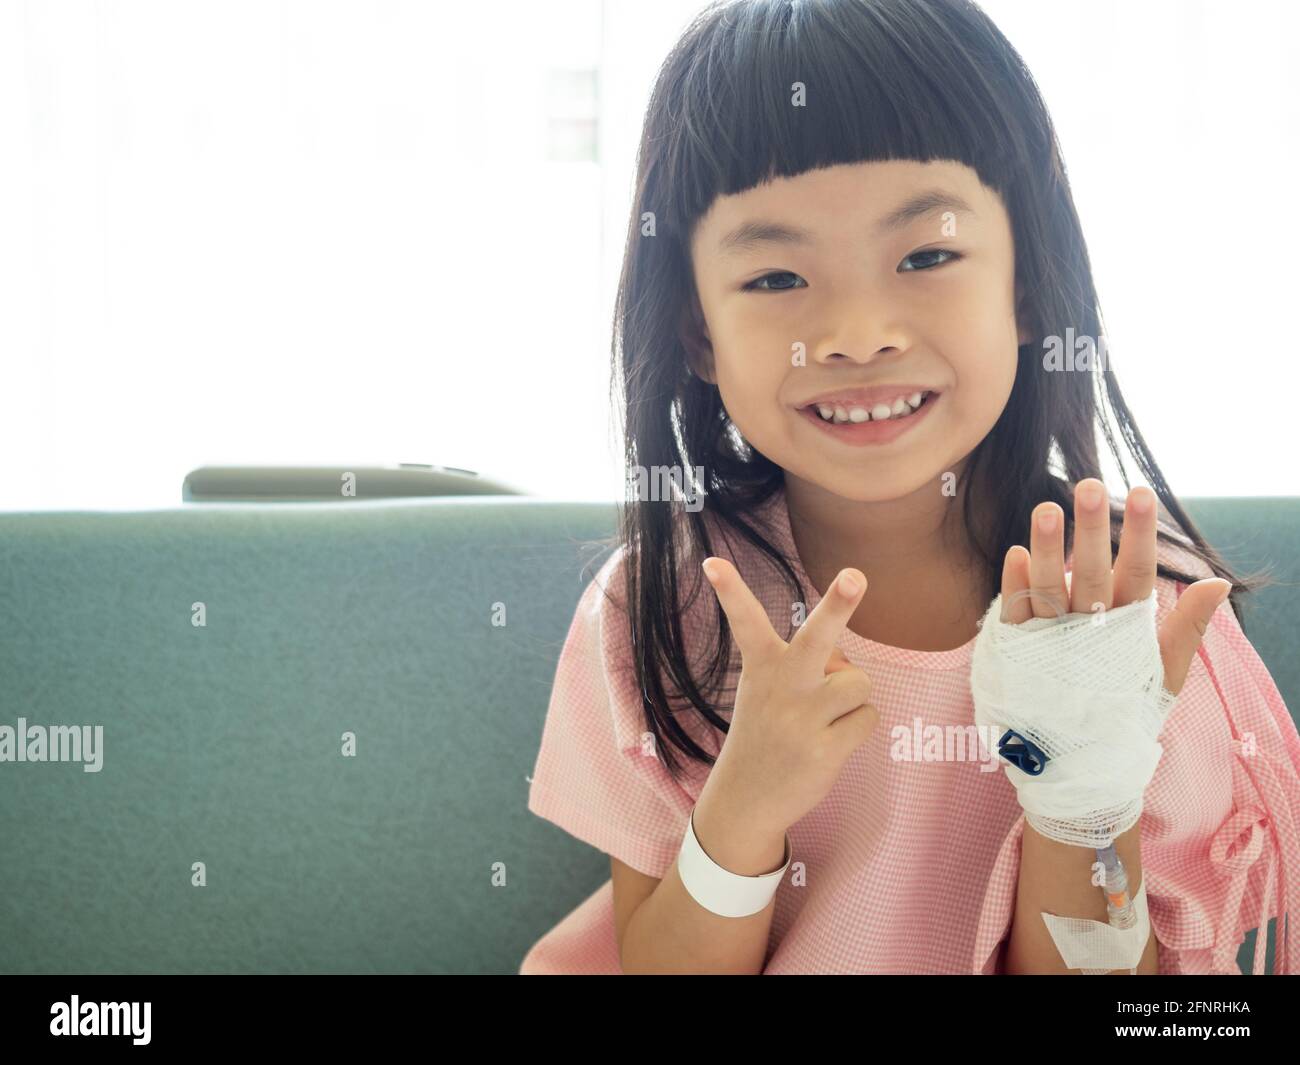 Asiatische Kind Mädchen sitzt auf Krankenhausbett, zeigt zwei Finger. Positives Bild des Patienten im Krankenhaus. Stockfoto